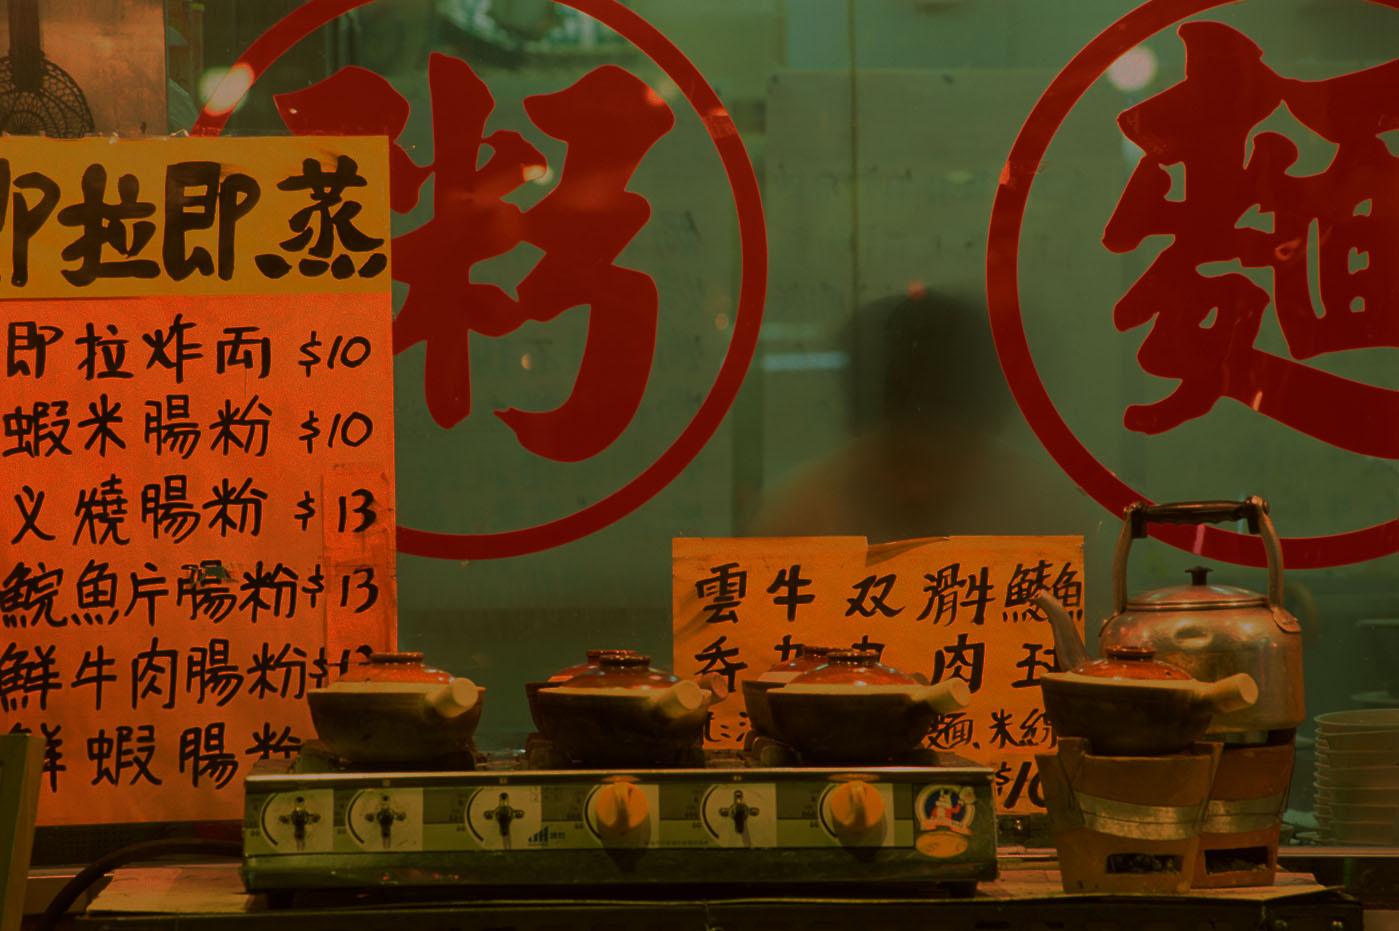 Китайский ресторан с надписями на китайском языке.